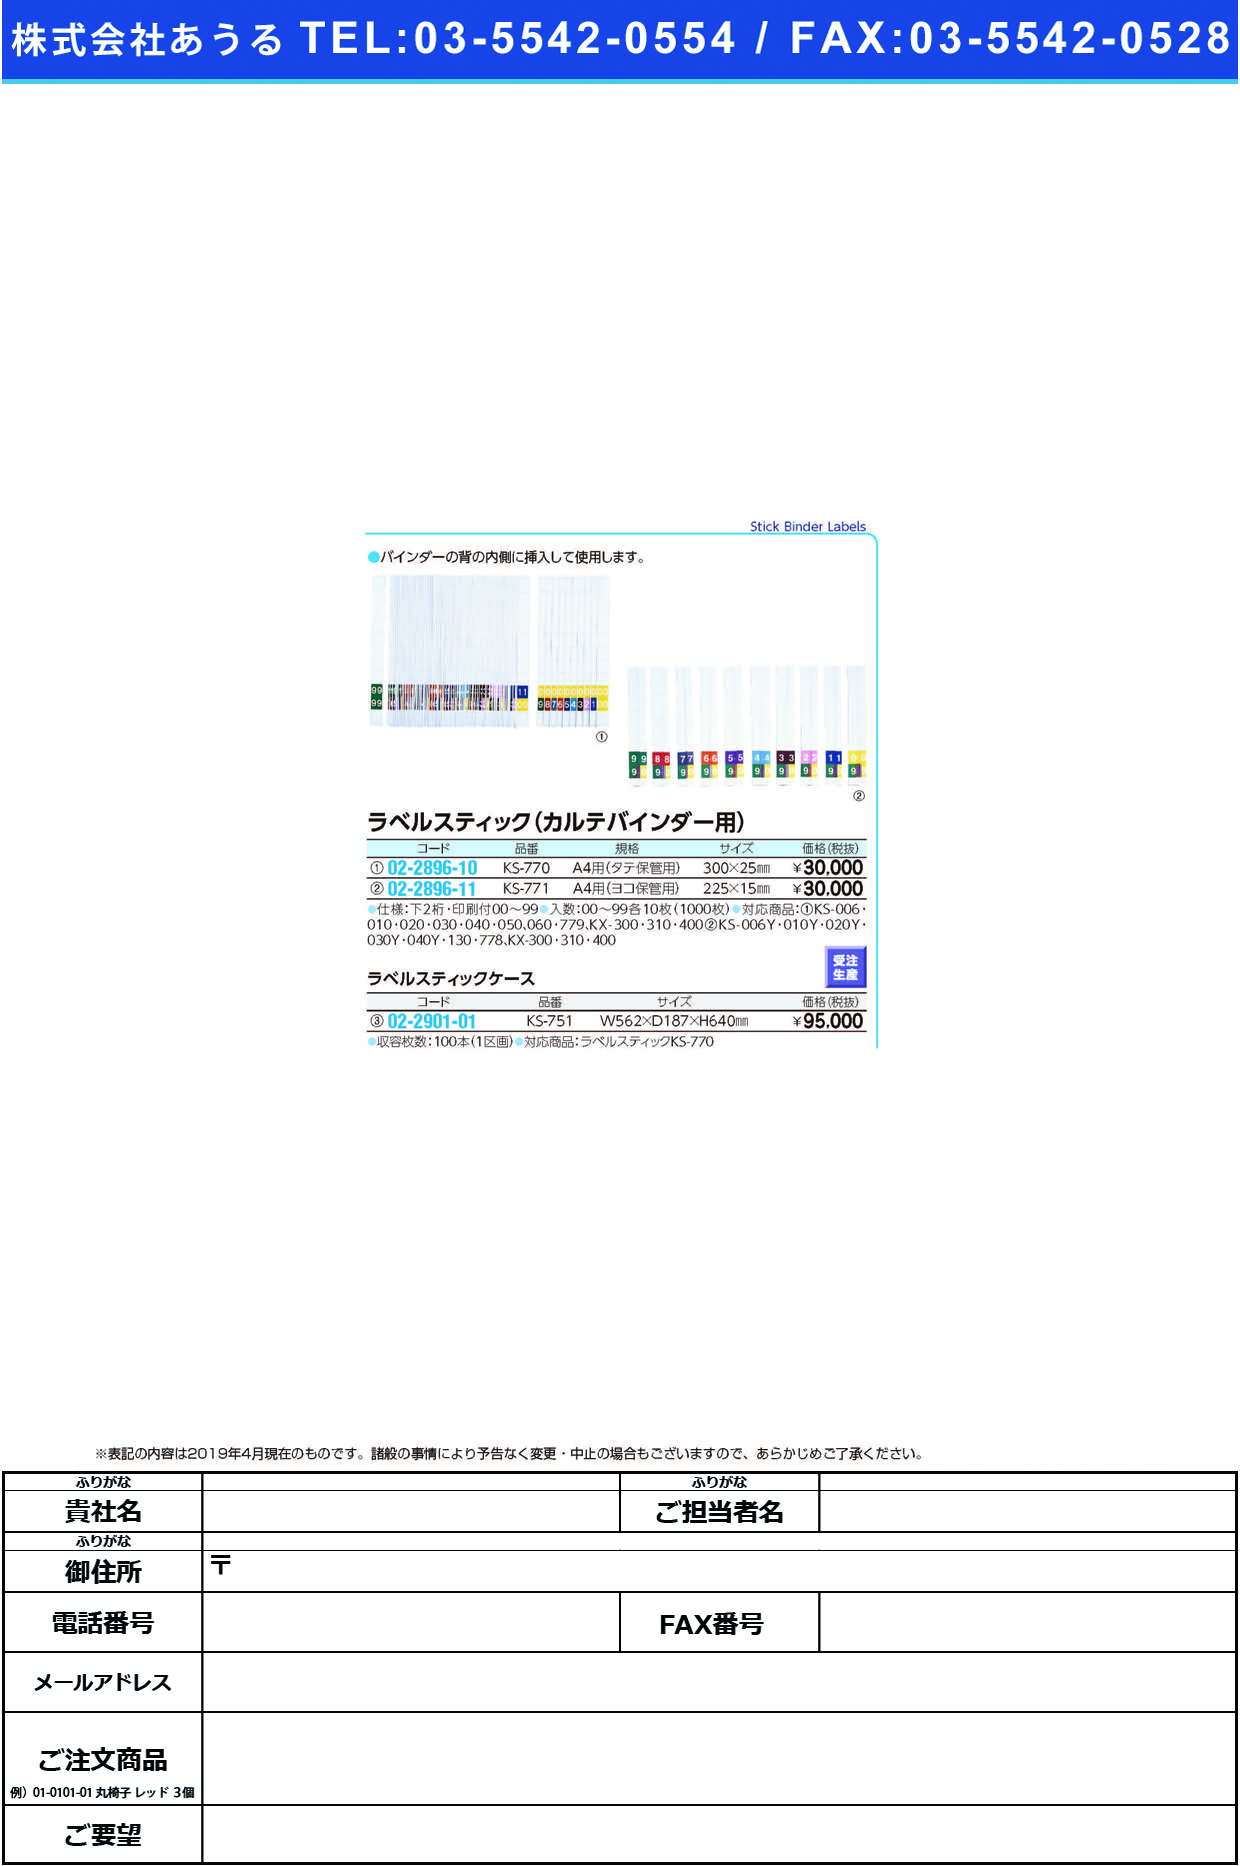 (02-2901-01)ラベルスティックケース KS-751(KS-770ﾖｳ) KS751(ケルン)【1個単位】【2019年カタログ商品】